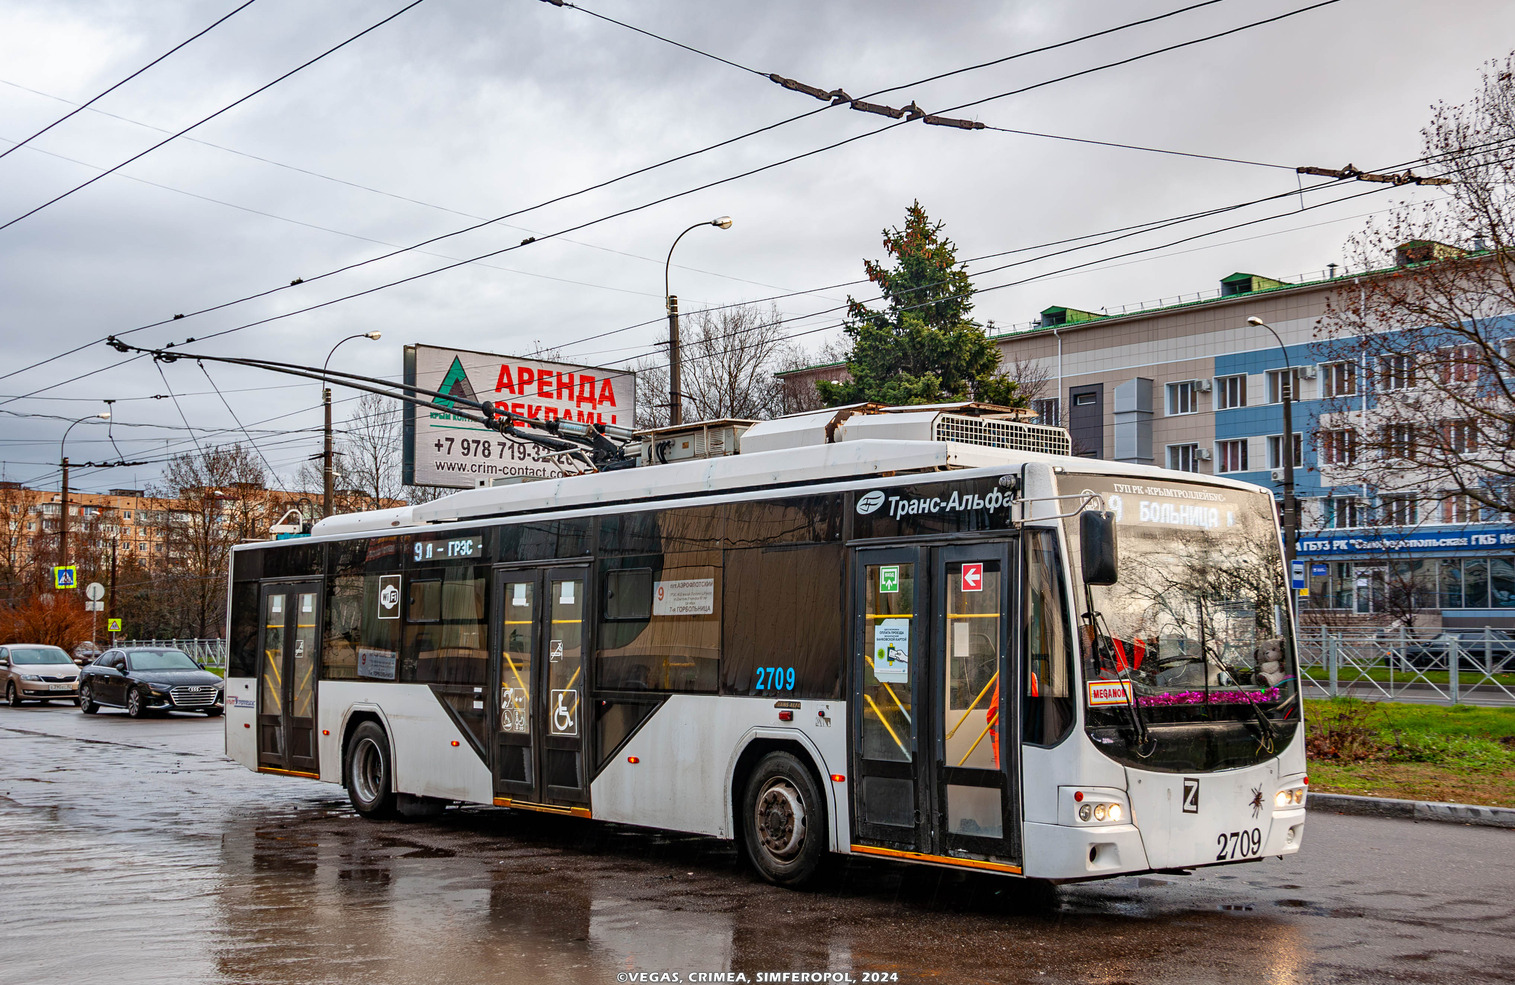 Крымский троллейбус, ВМЗ-5298.01 «Авангард» № 2709